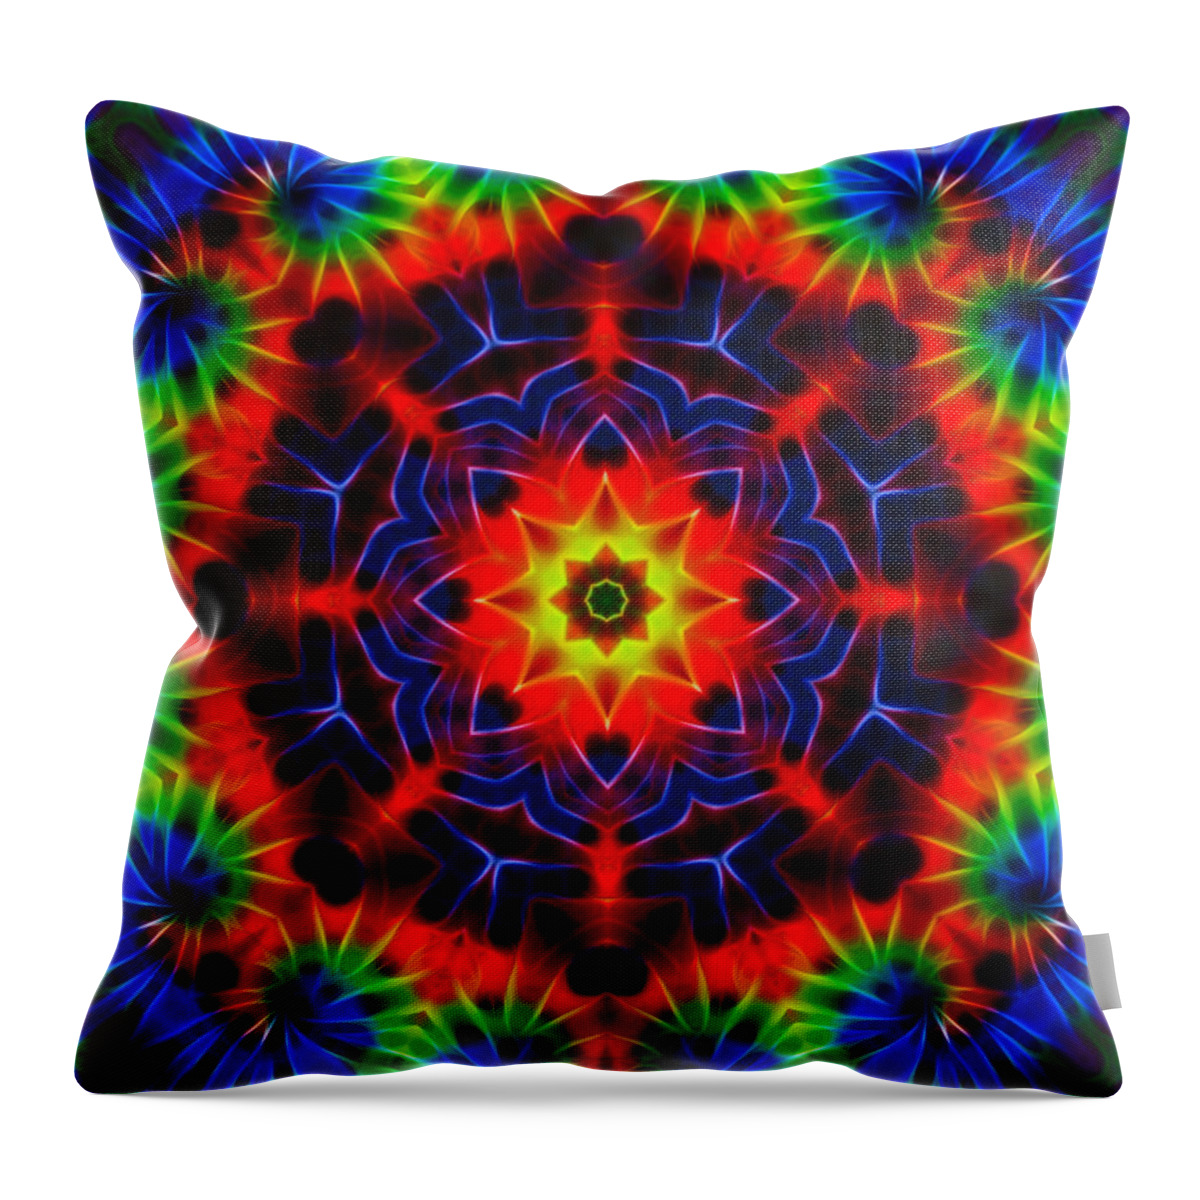 Kaleidoscope Throw Pillow featuring the digital art Tie Dye Kaleidoscope by Lynne Jenkins